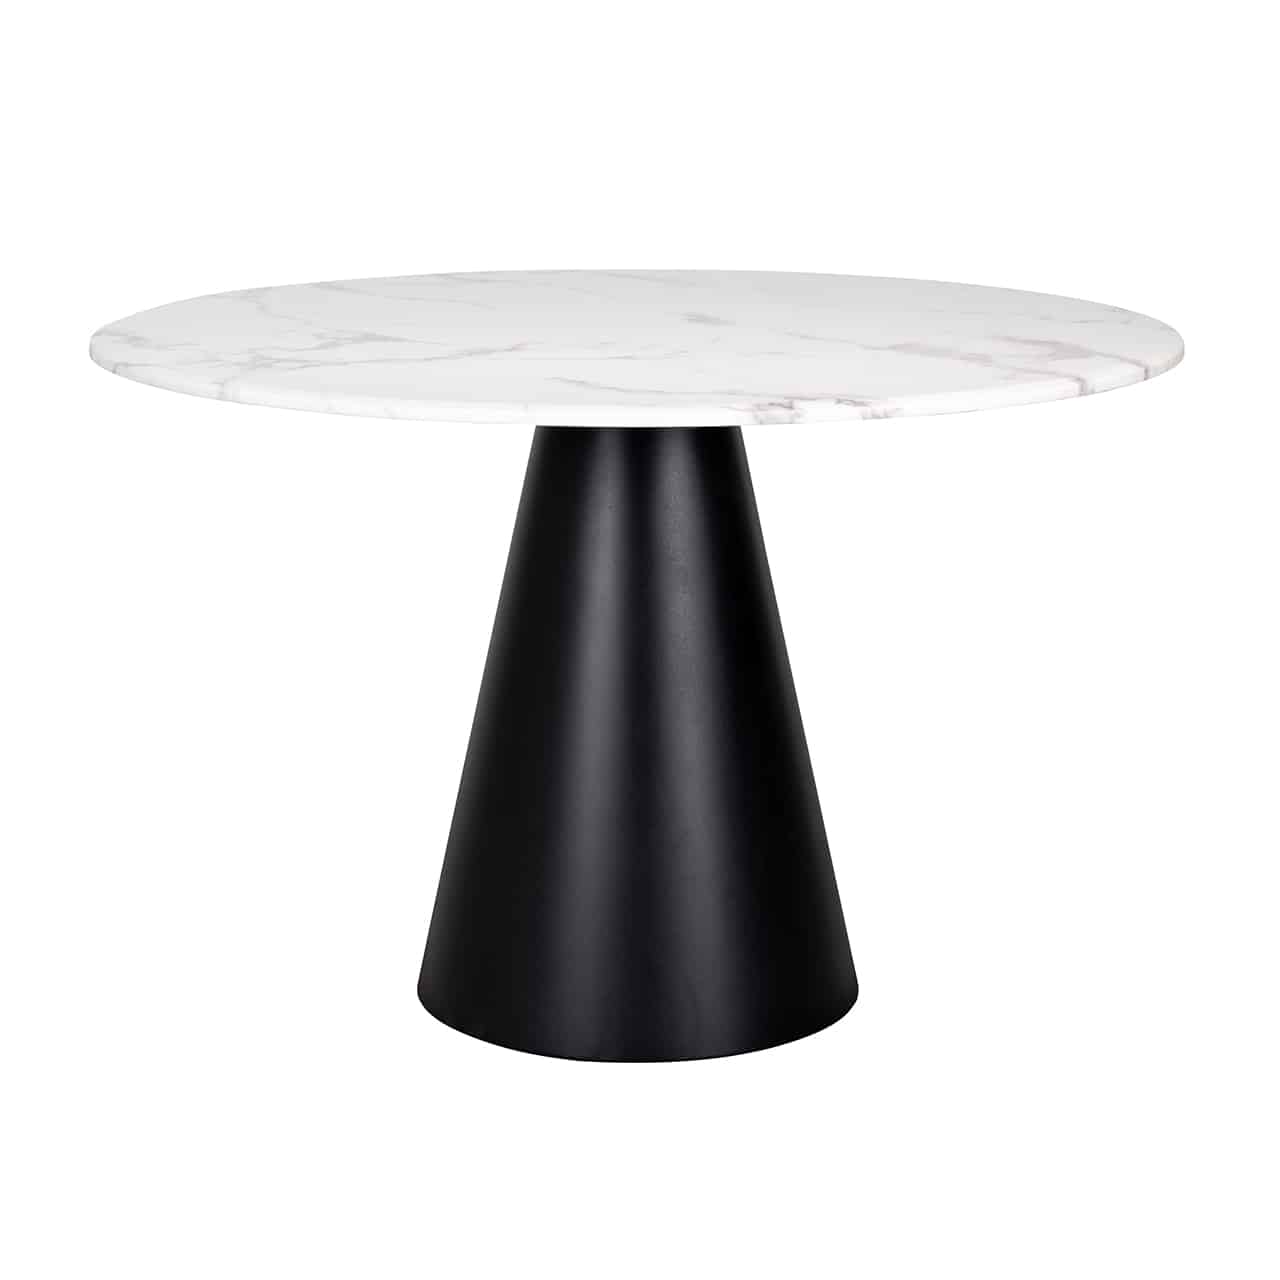 Moderner  Esstisch mit einem schwarzen, zylinderförmigen Fuß aus Edelstahl, darauf eine runde, weiß marmorierte Tischplatte.